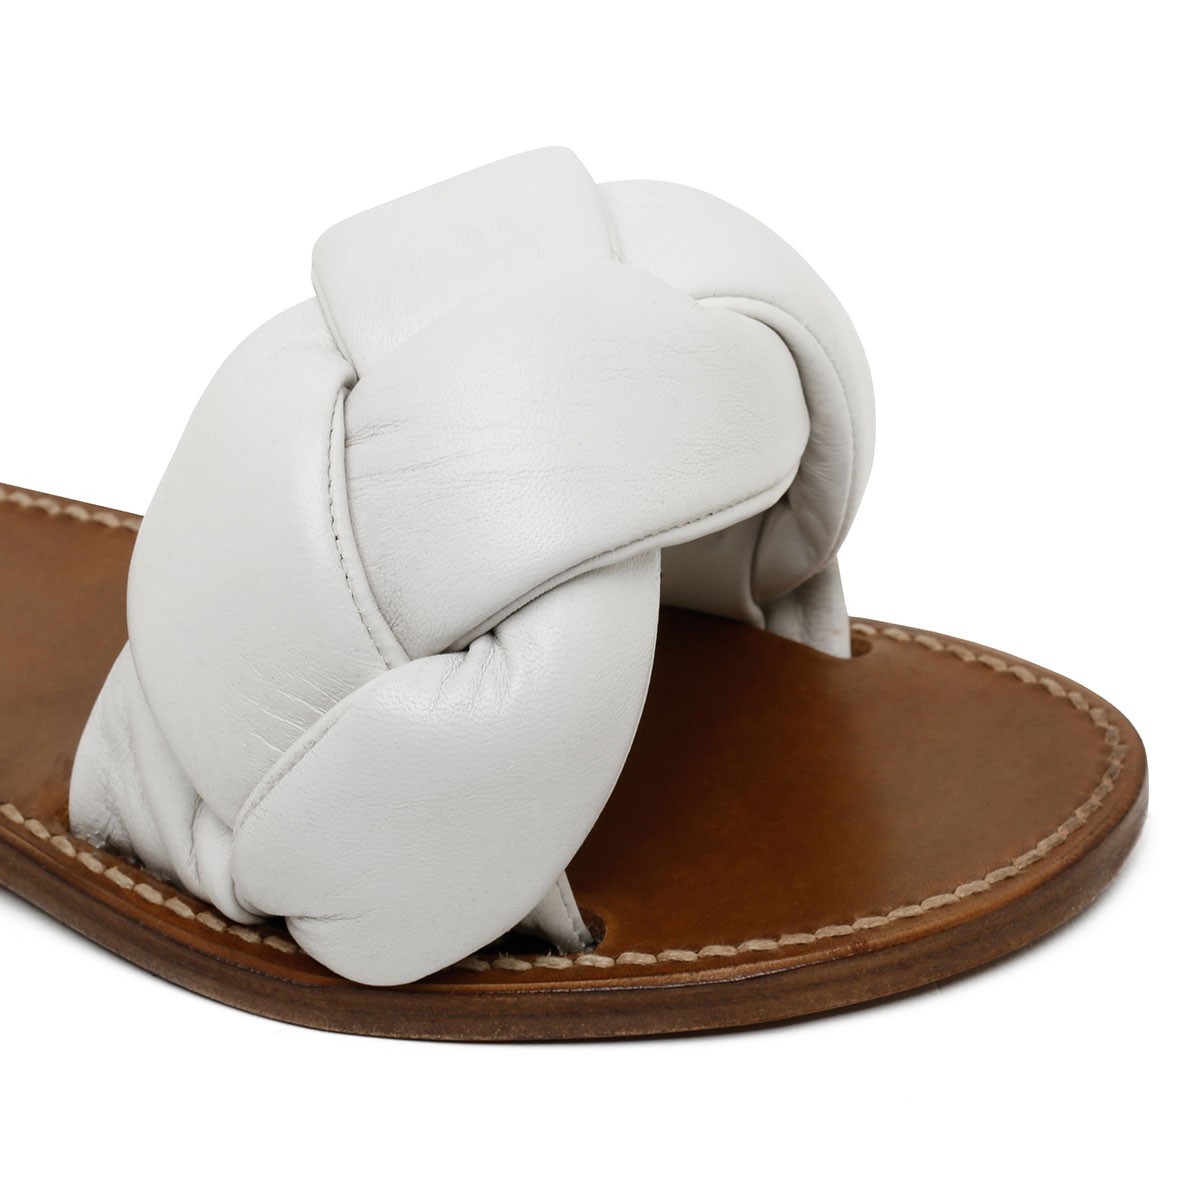 Sandali in pelle intrecciata bianca